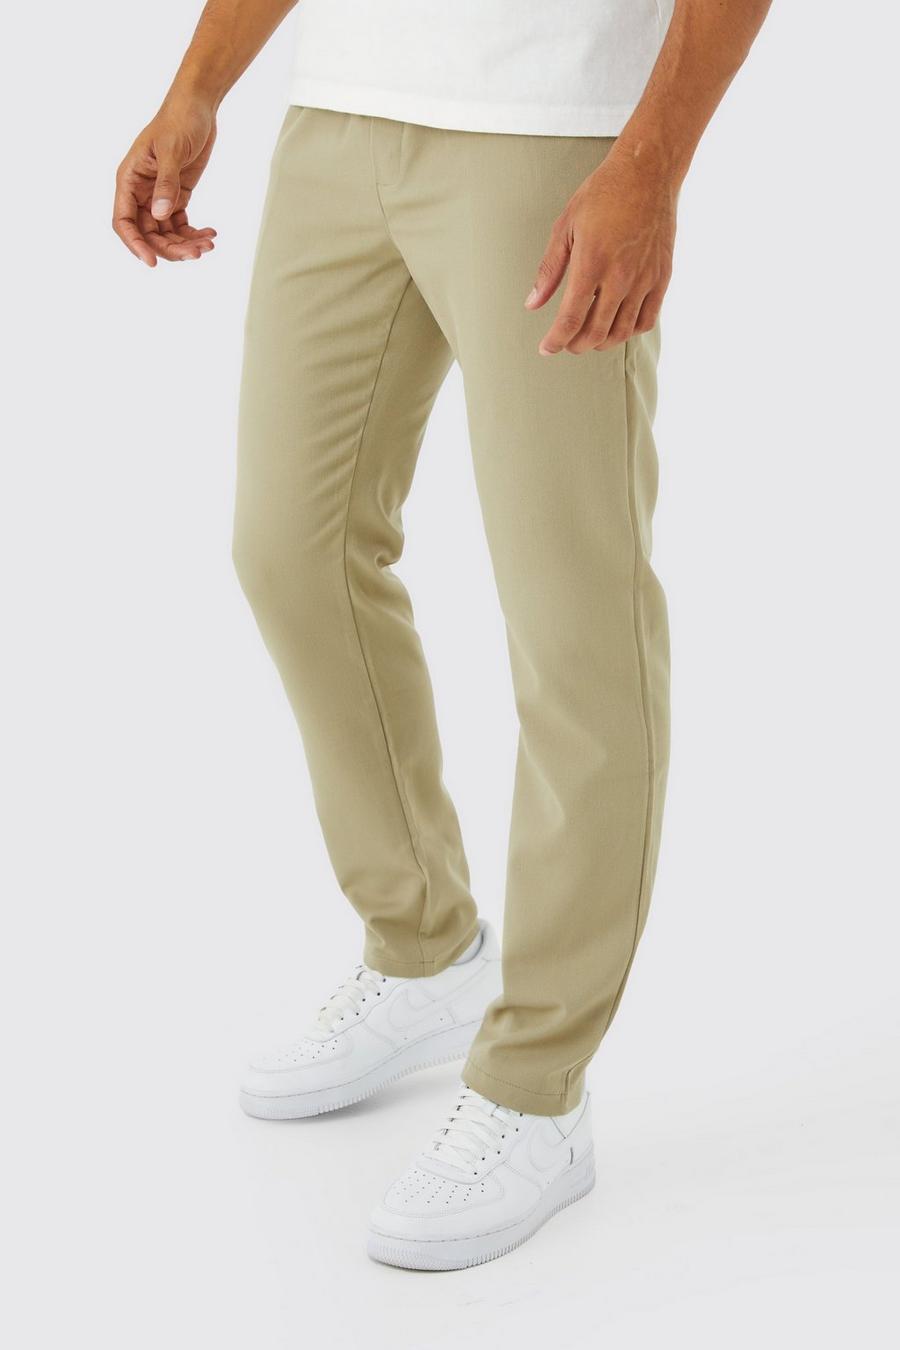 Pantaloni tuta comodi Slim Fit in Stretch, Taupe beige